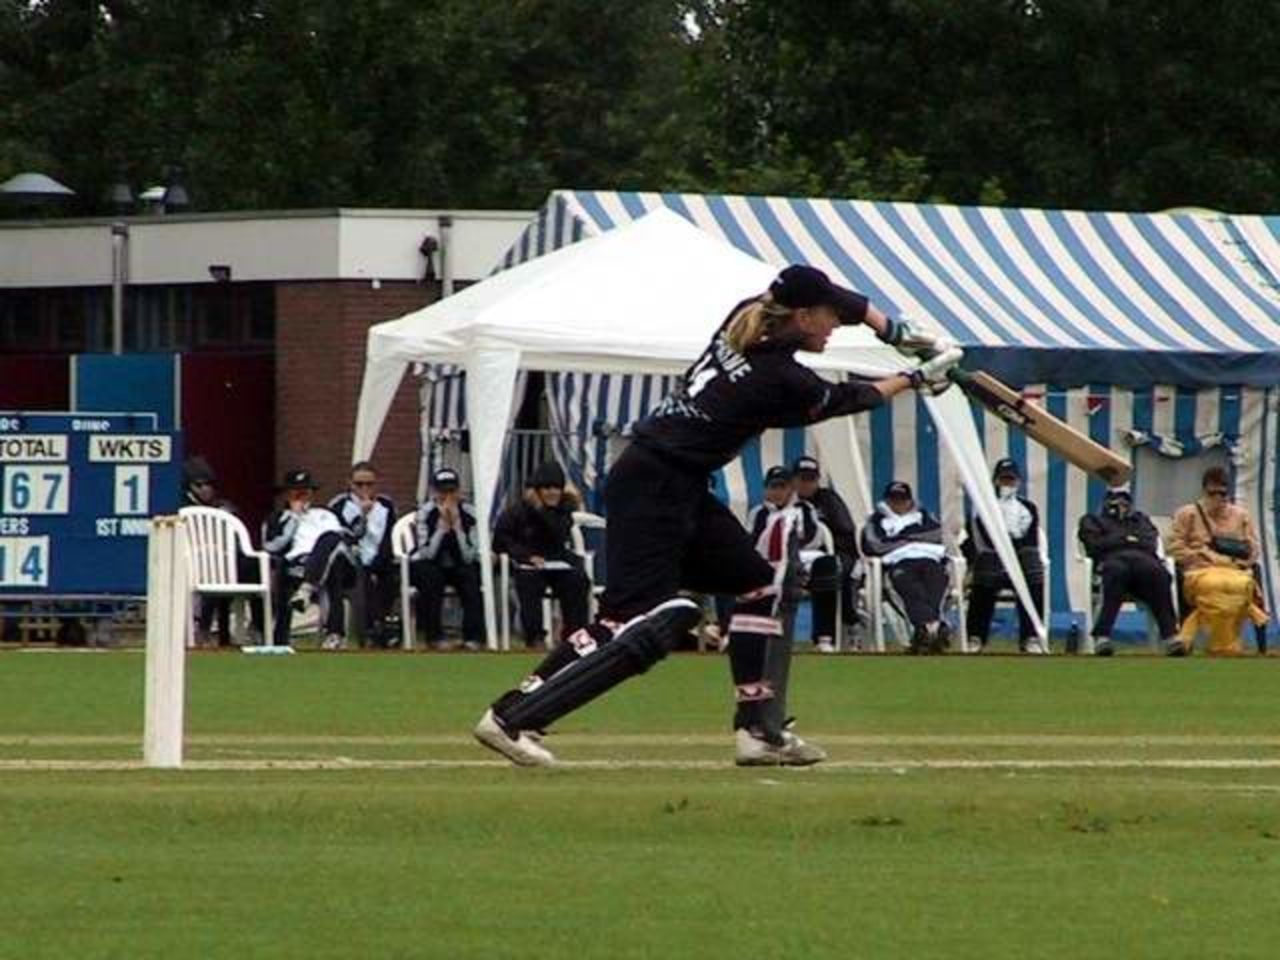 Nicola Payne batting for New Zealand Women v Netherlands Women, 28 June 2002